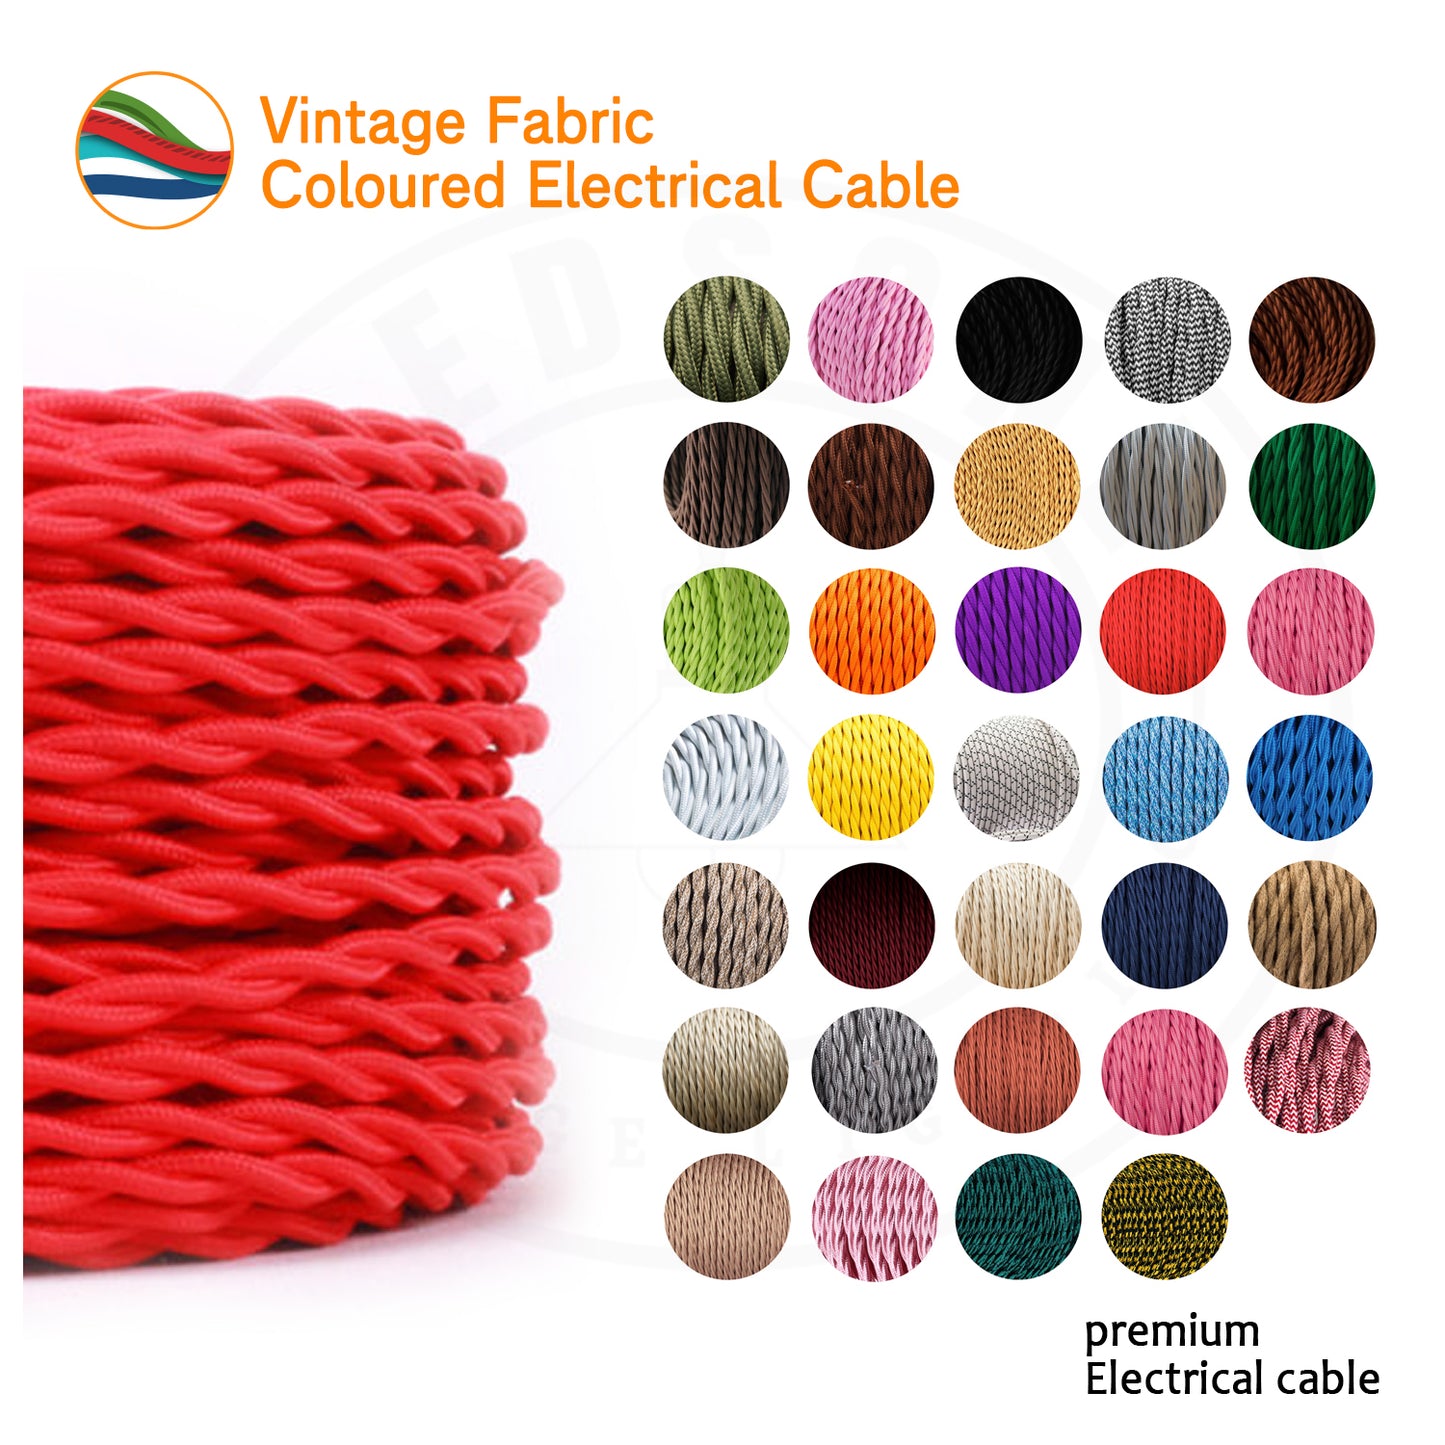 Cable Colour